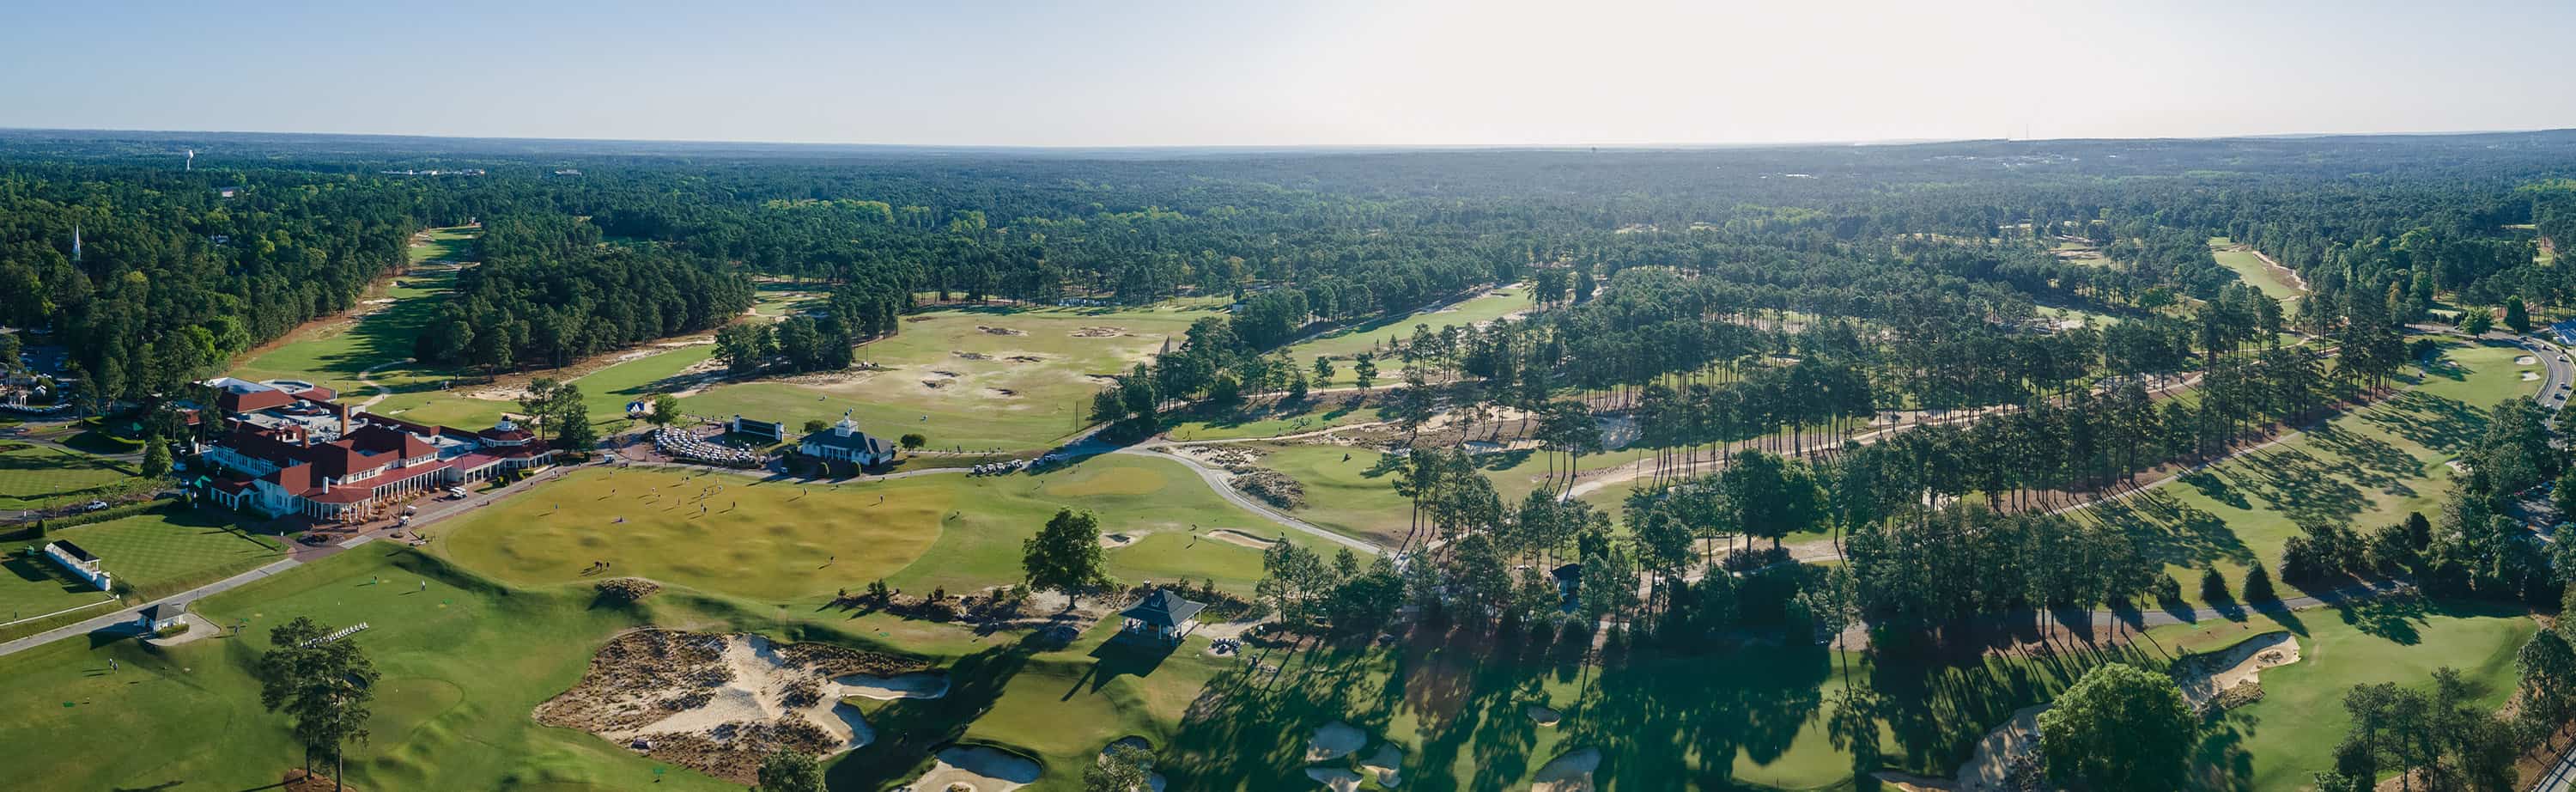 Aerial tour of Pinehurst Golf Resort and Pinehurst golf courses